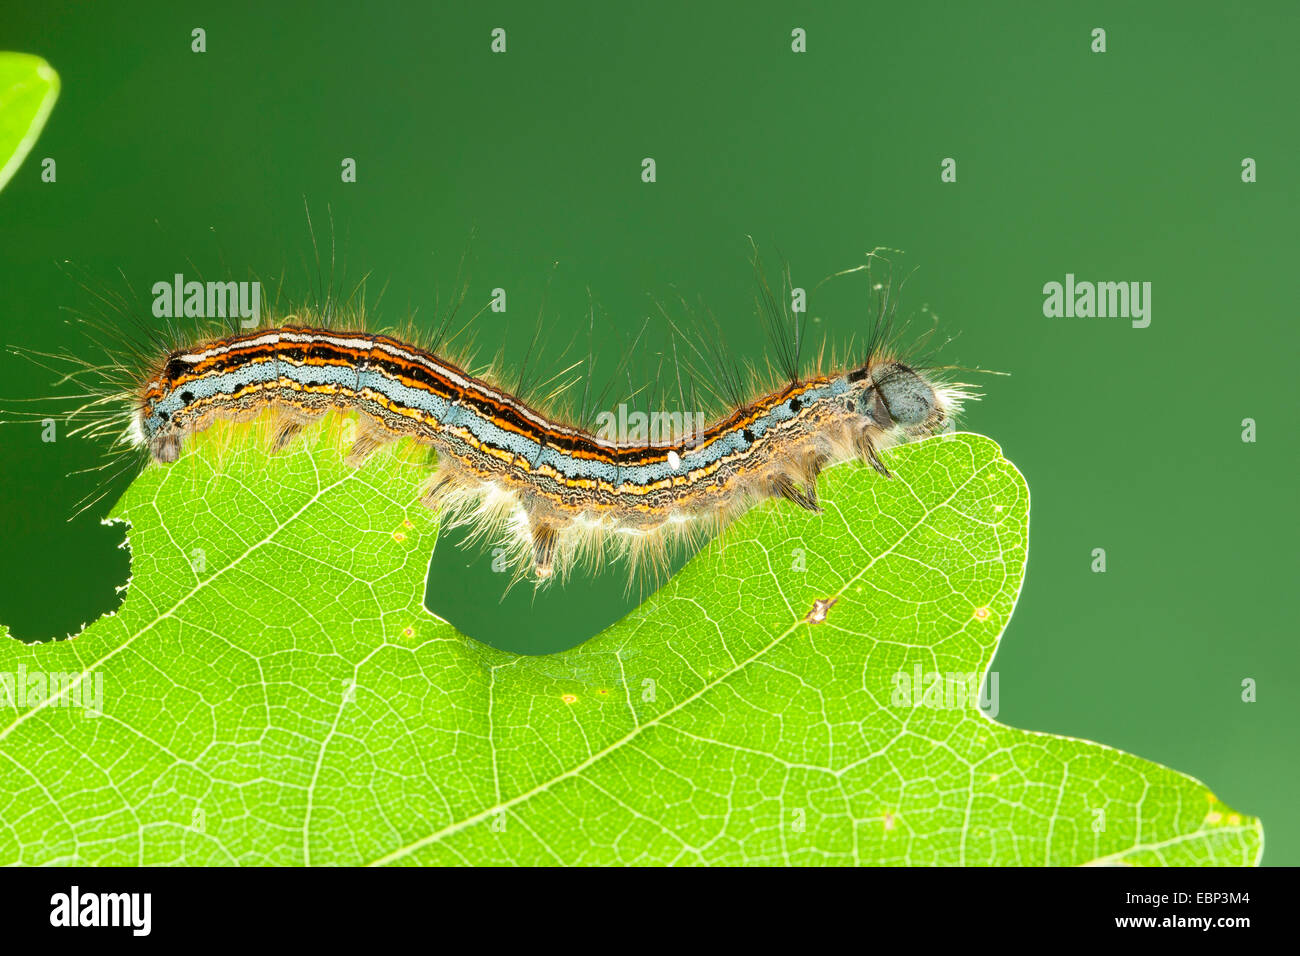 lackey, European lackey moth, common lackey (Malacosoma neustria, Malacosoma neustrium), caterpillar feeding on oak leaf, Germany Stock Photo